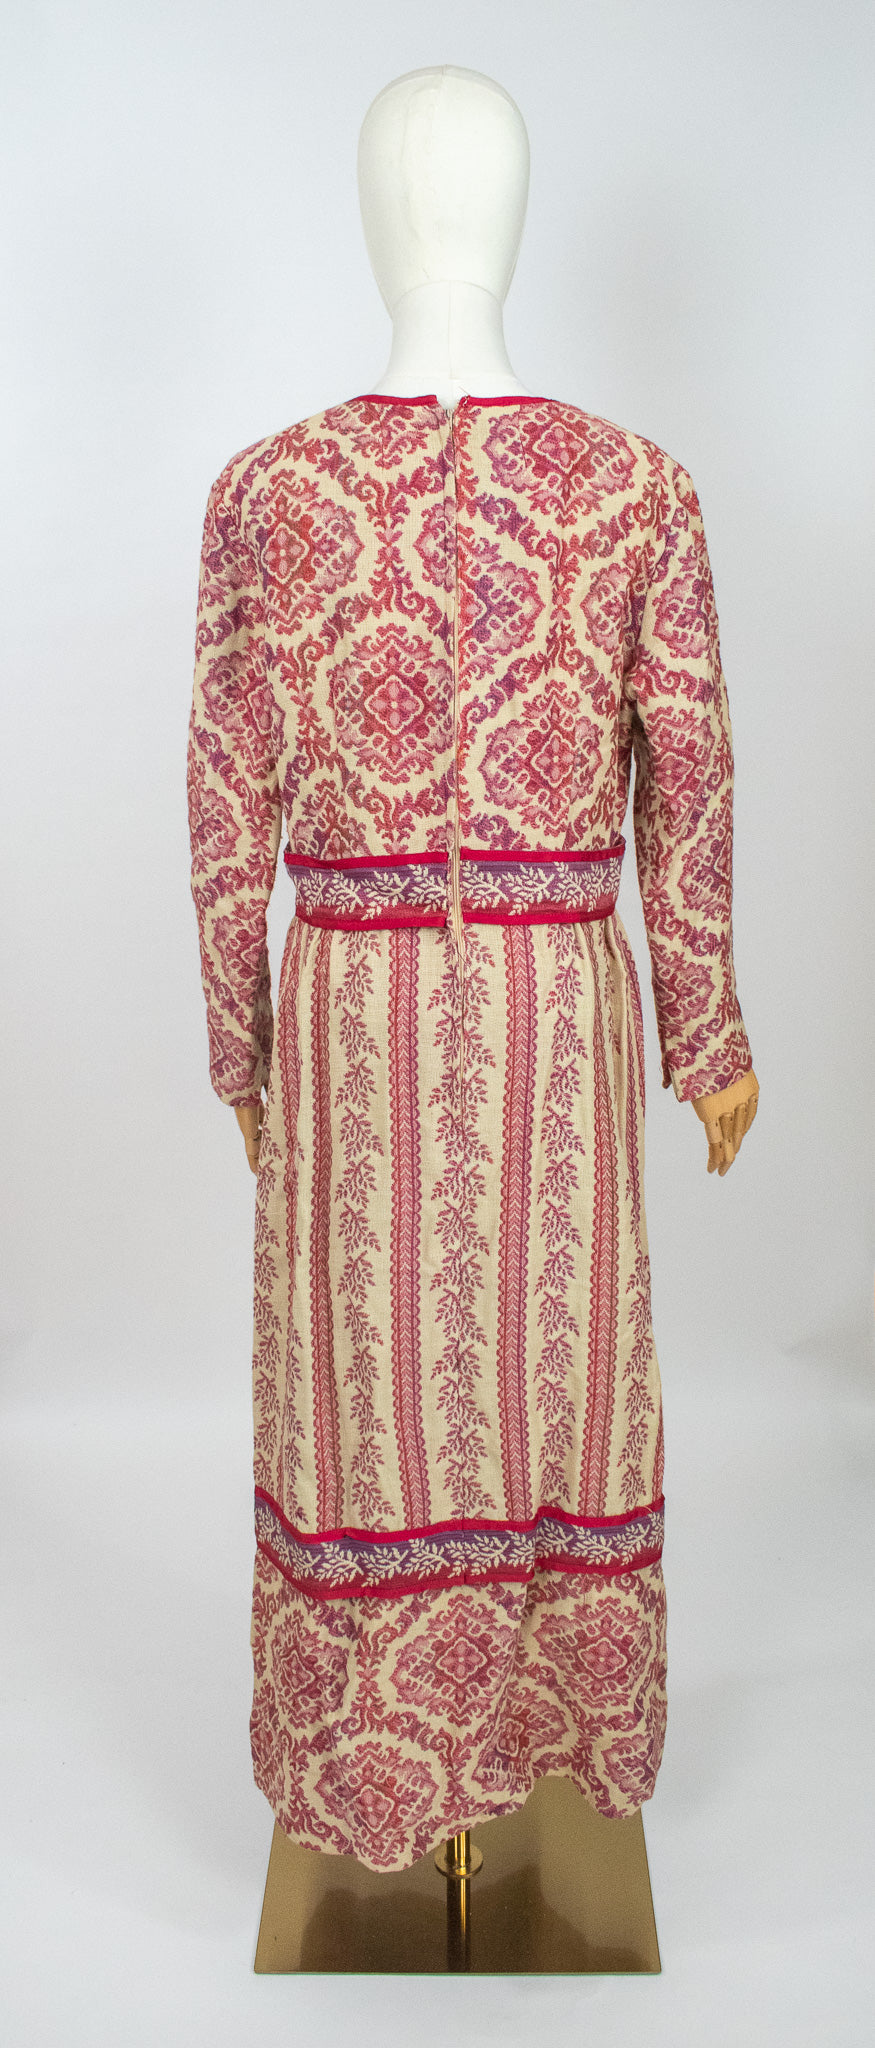 Vintage 1970's Boho Woollen Tapestry Dress by Jo Ellen Couture by Allen Davidson.